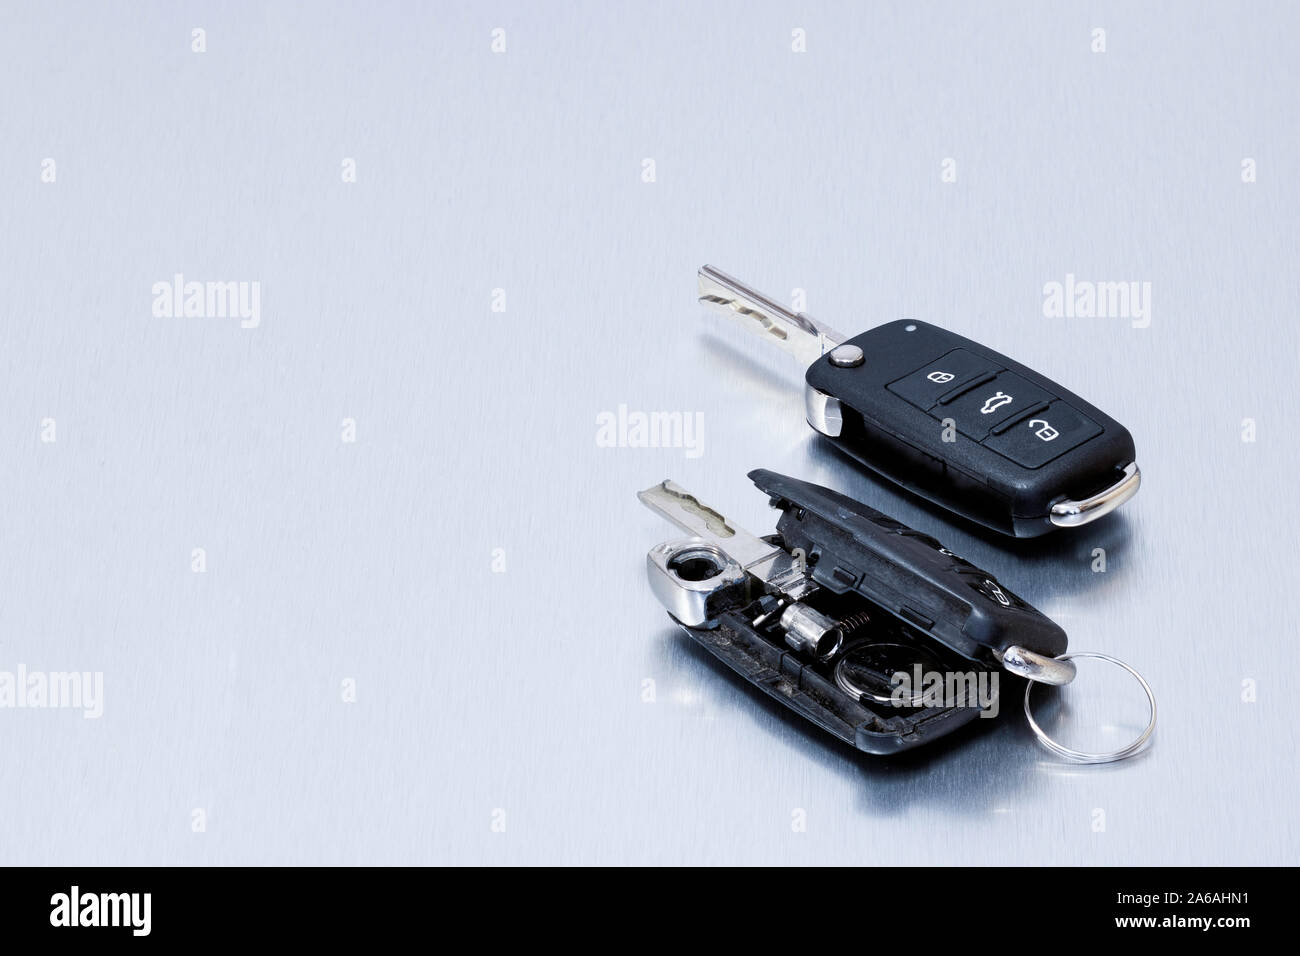 Rotto o danneggiato auto key fob e nuovo telecomando chiave del veicolo su  sfondo di alluminio.